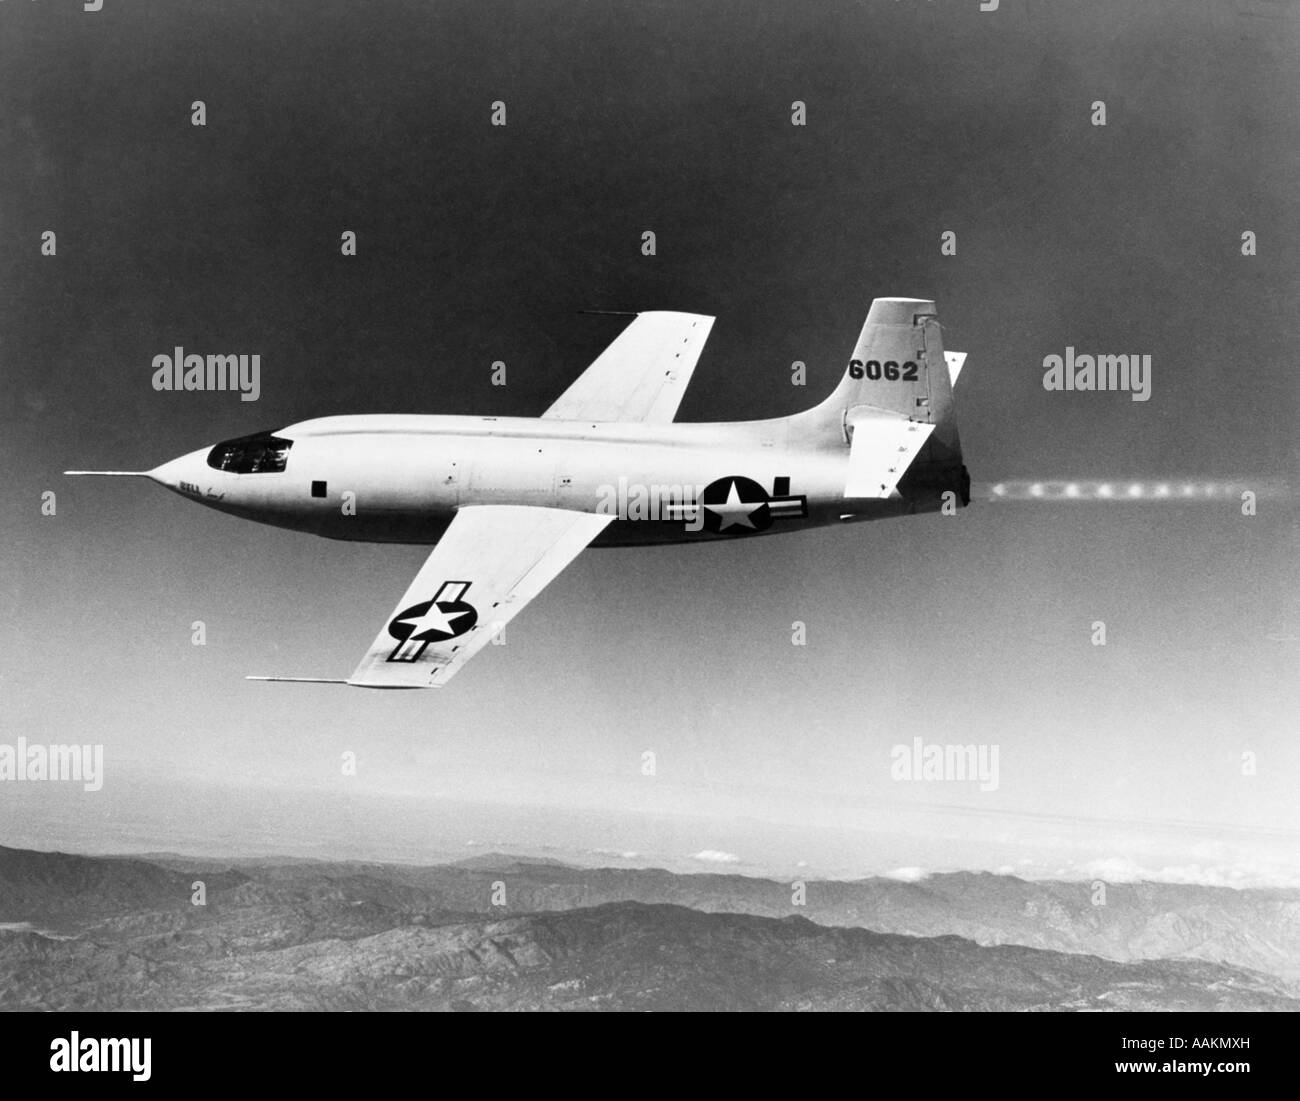 1940S 1950S BELL X-1 US AIR FORCE ÜBERSCHALL FLUGZEUG ENTWORFEN FÜR MAXIMALE GESCHWINDIGKEIT VON 1700 KM/H AUF DER FLUCHT Stockfoto